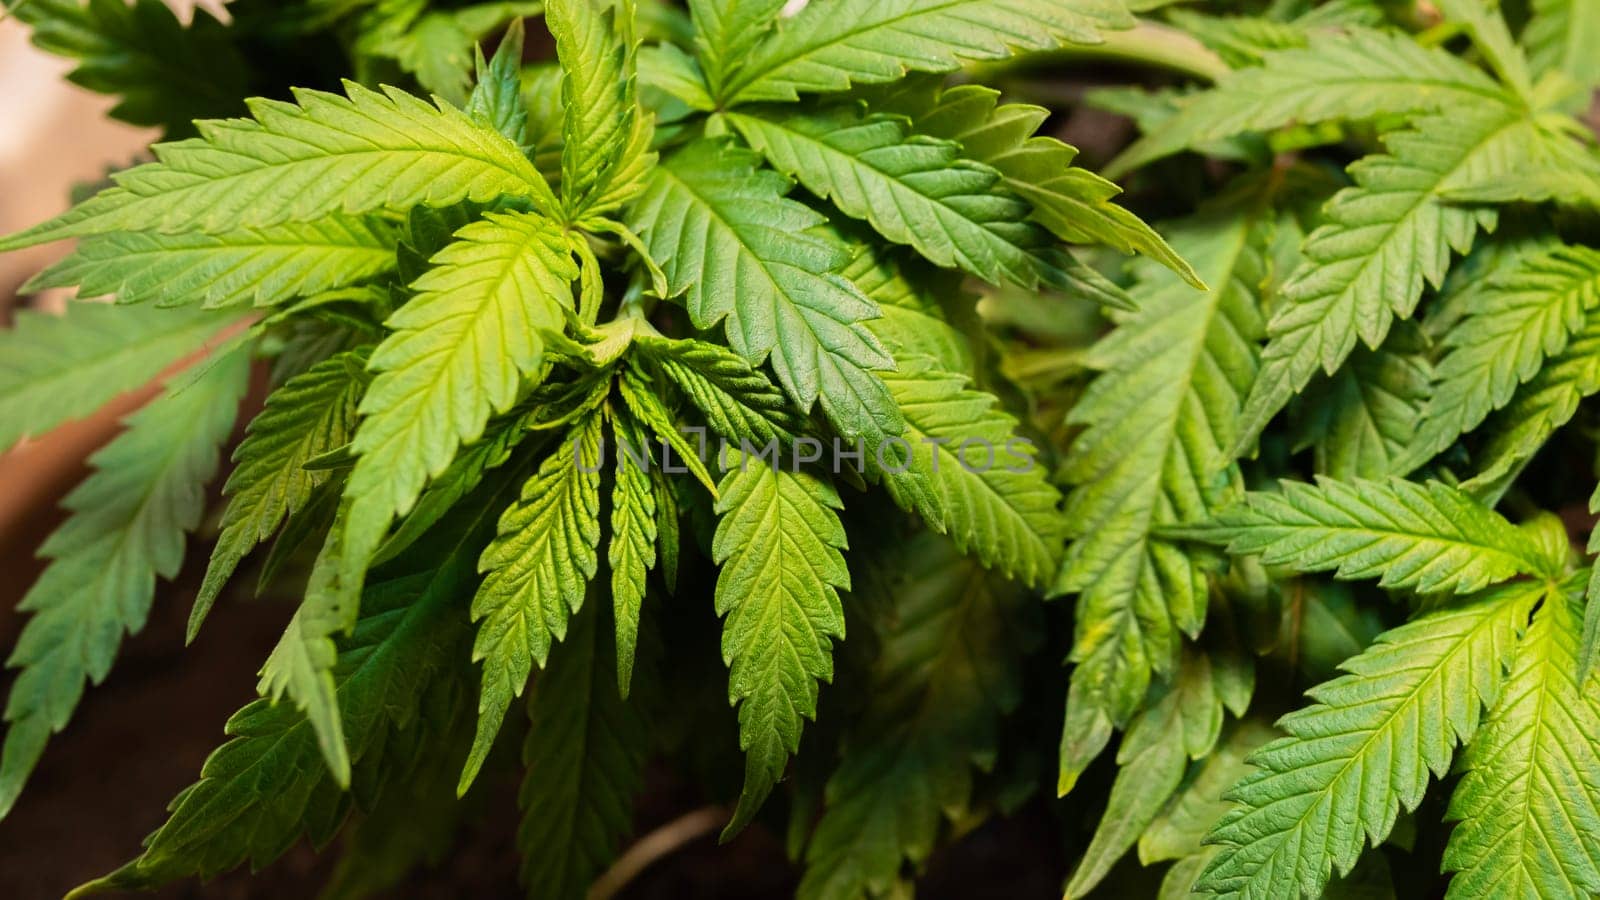 Cannabis Texture, weed background, growing marijuana indoor by jackreznor